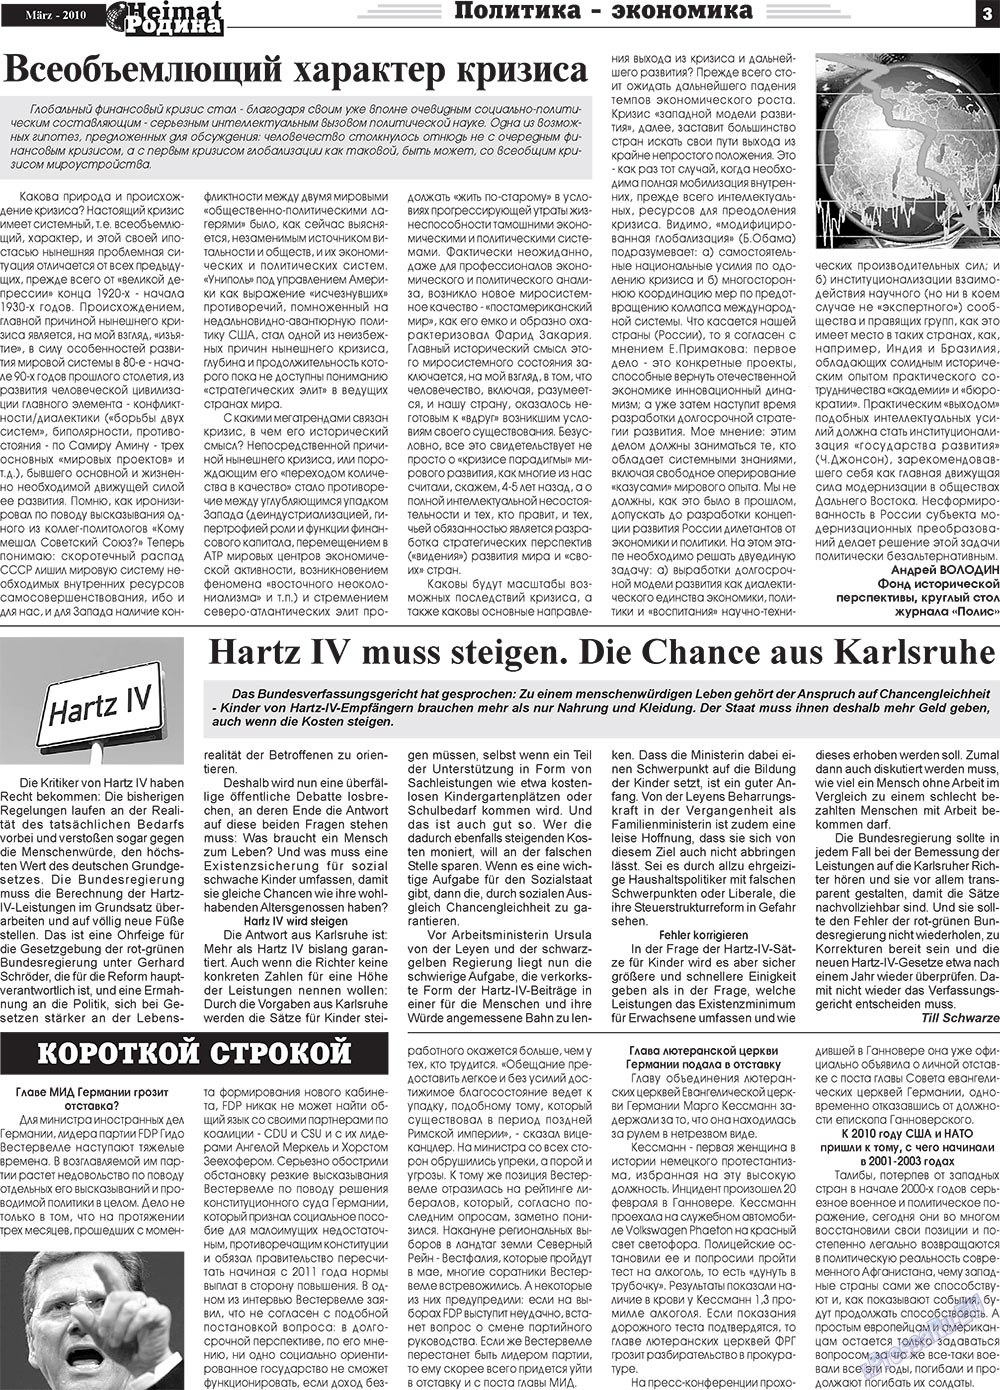 Heimat-Родина (газета). 2010 год, номер 3, стр. 3